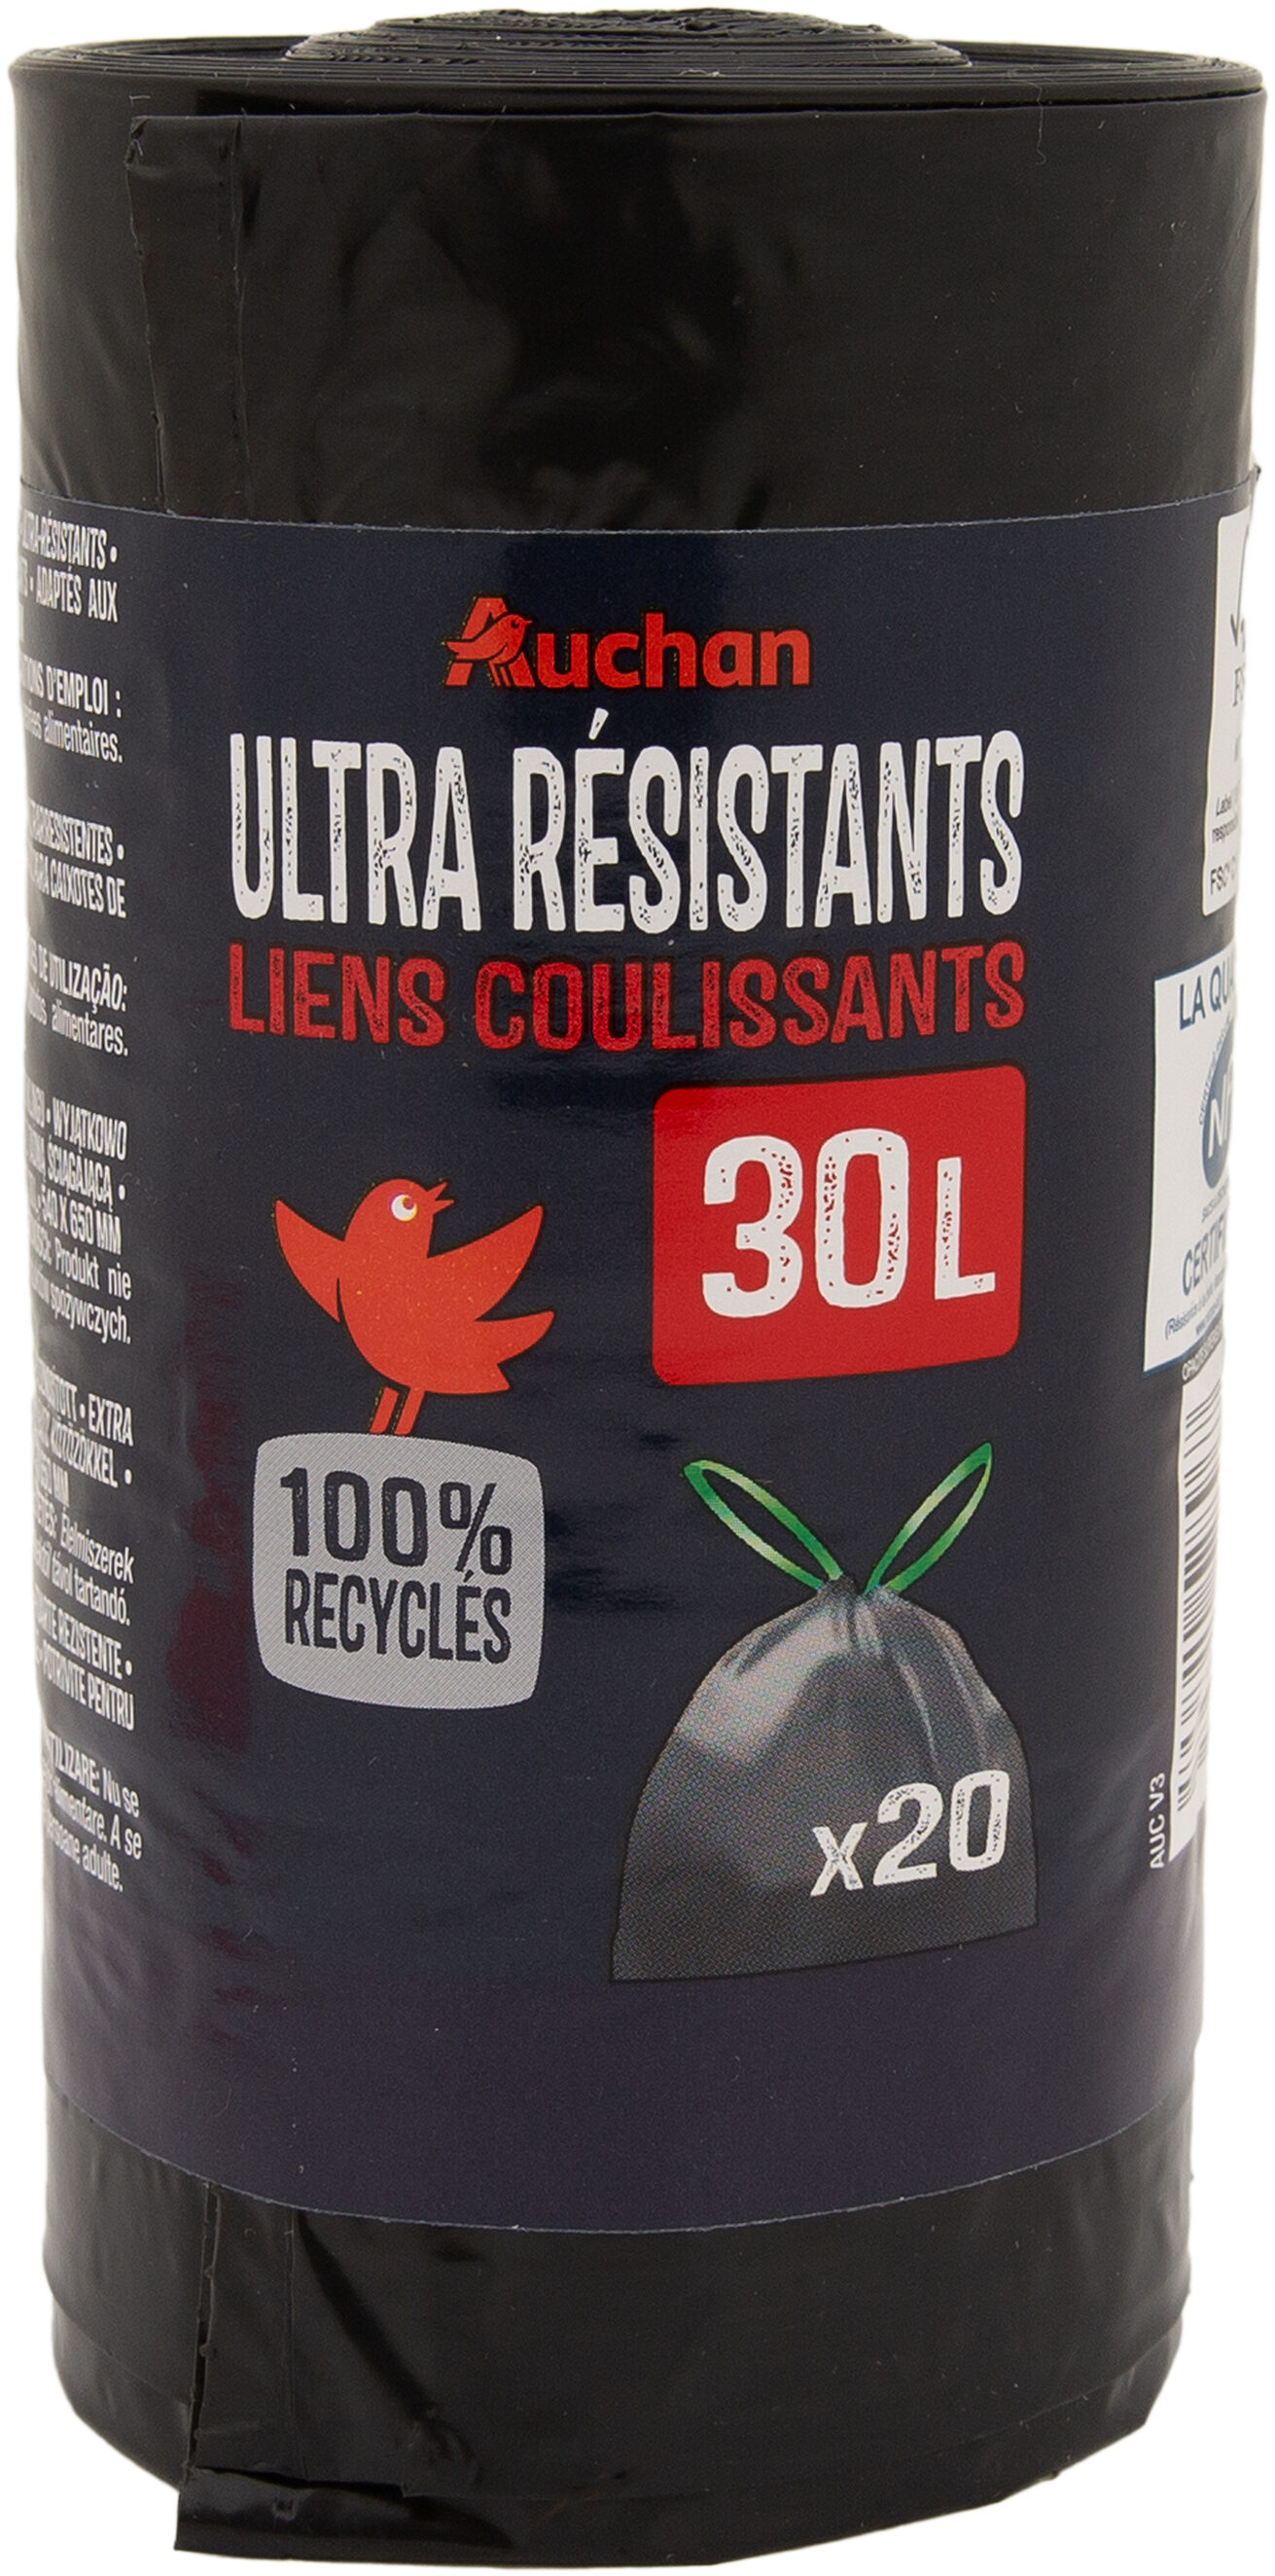 Sacs poubelle ultra-résistants liens coulissants 30 litres - Product - fr